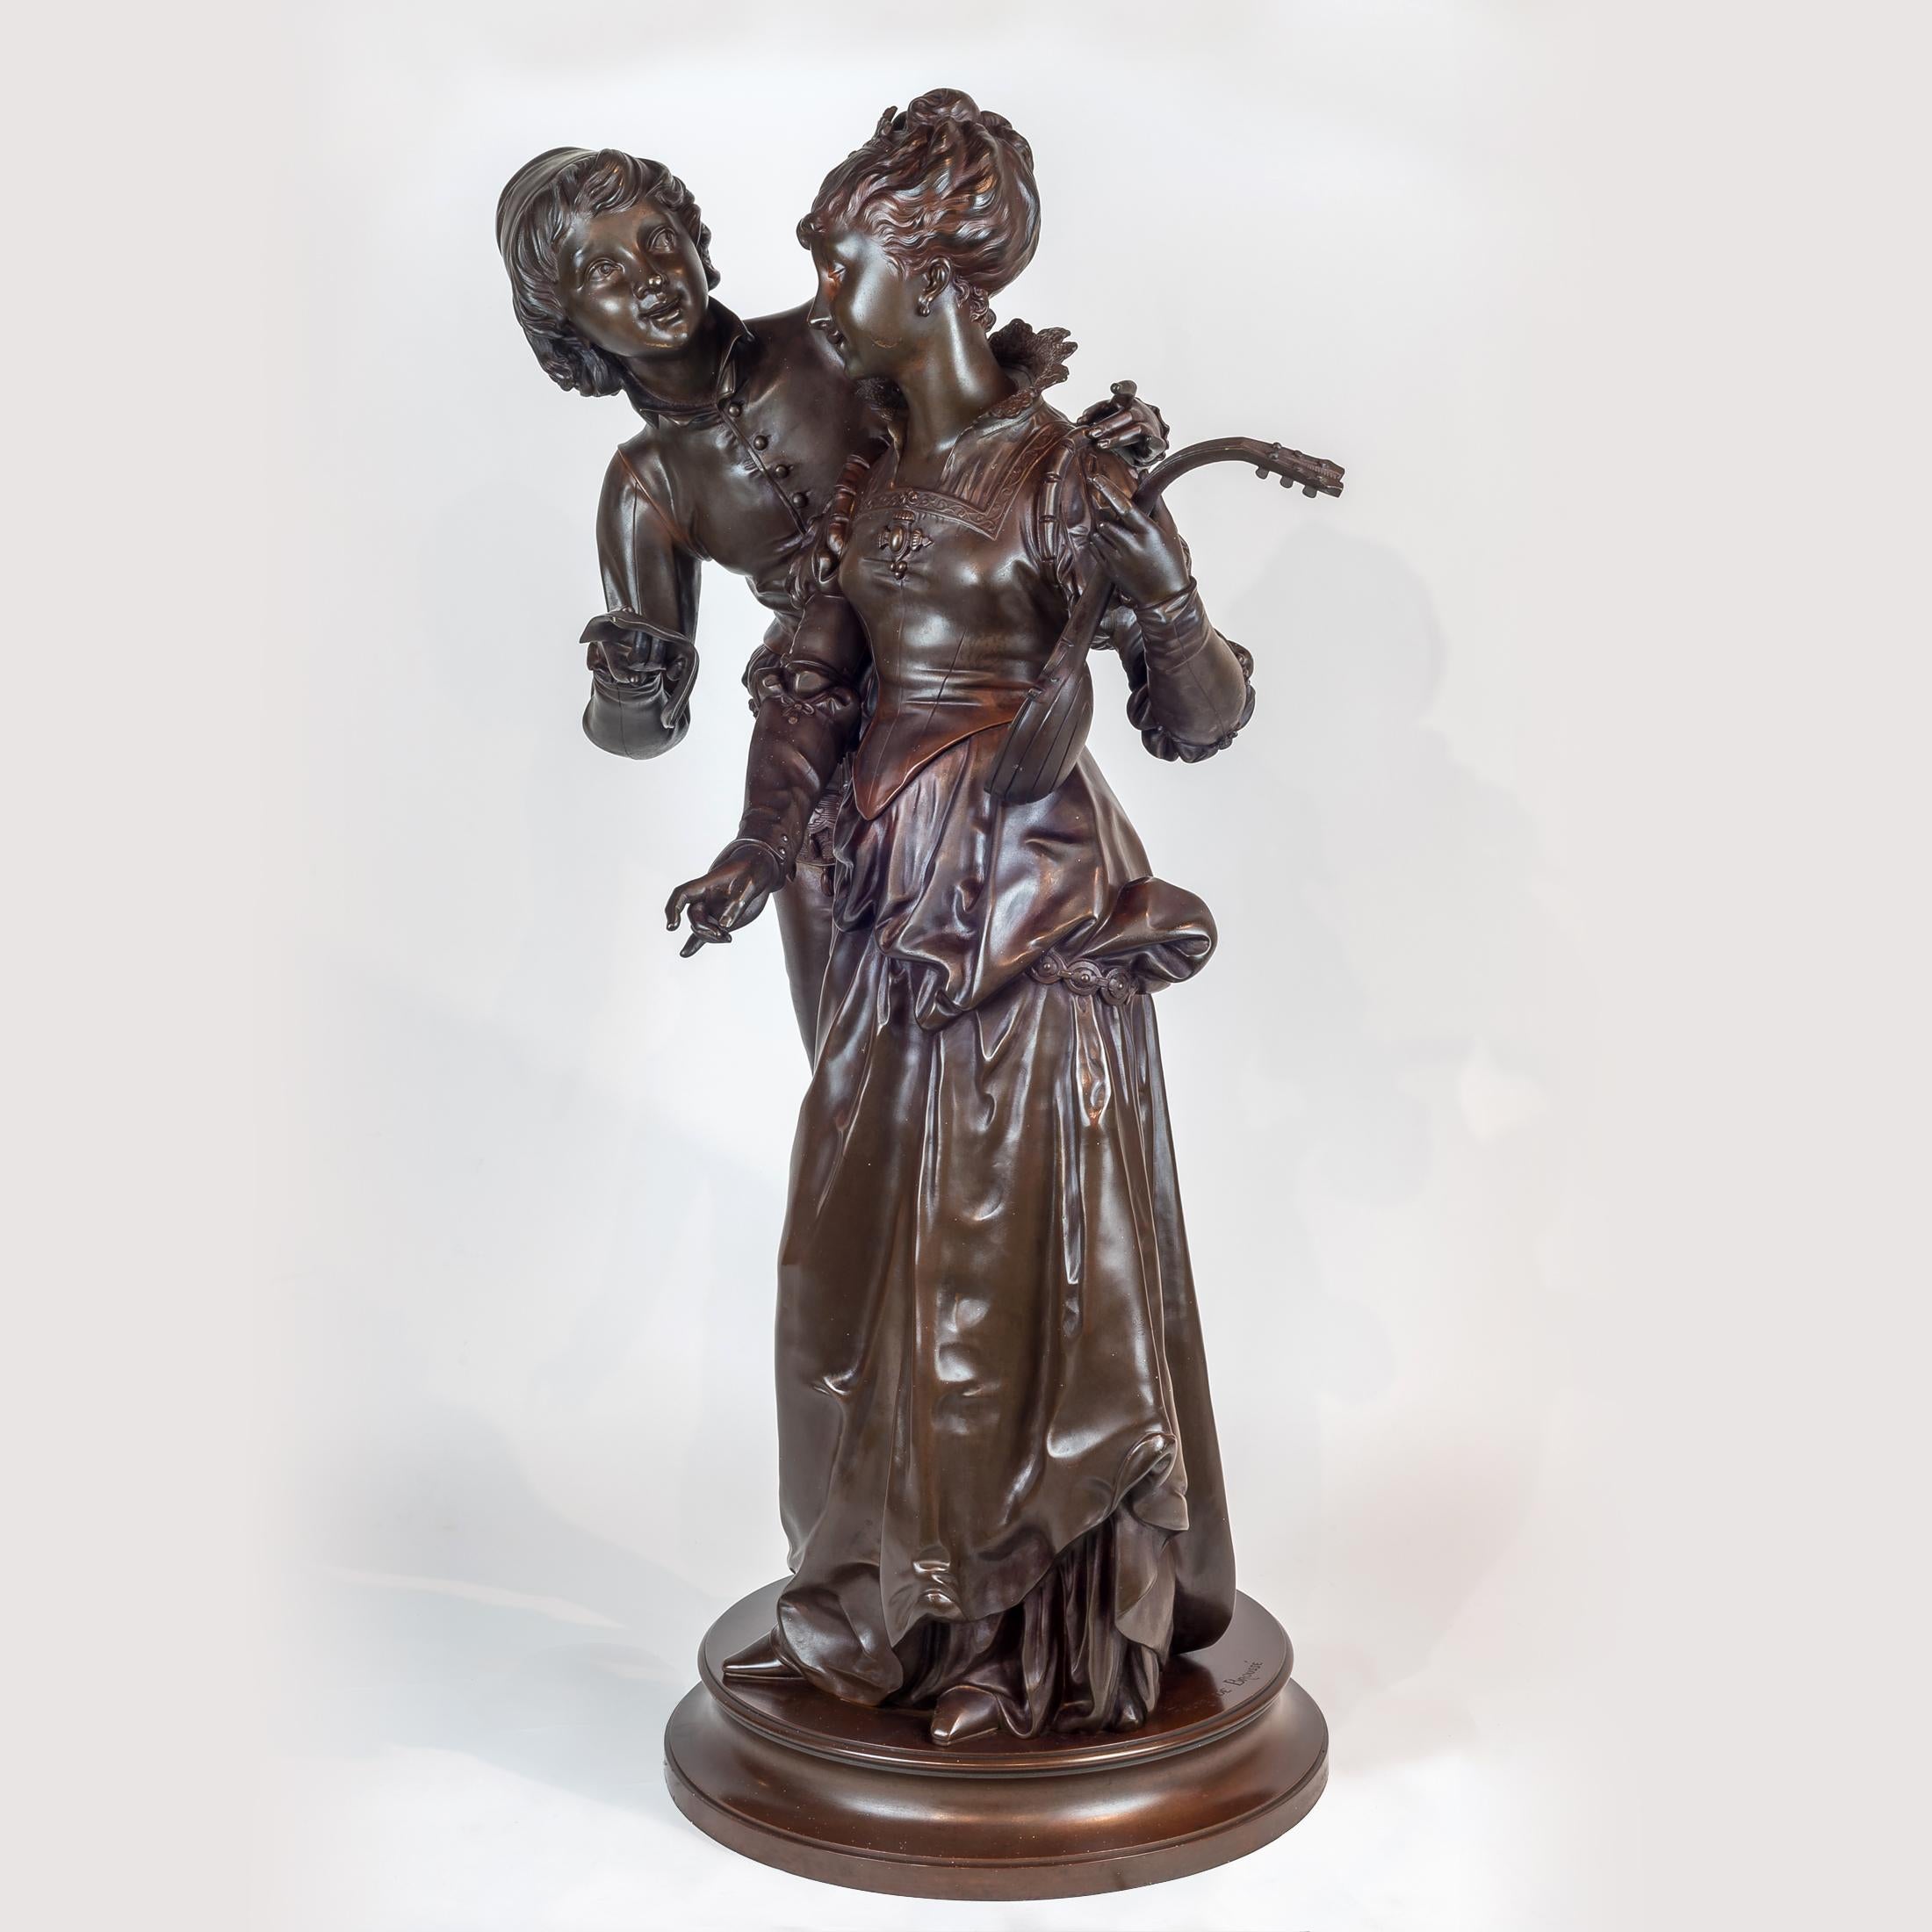 Sculpture en bronze patiné du 19e siècle représentant deux amoureux par Vincent Faure de Brousse
La femme tient une mandoline sur son bras gauche. Inscrit 